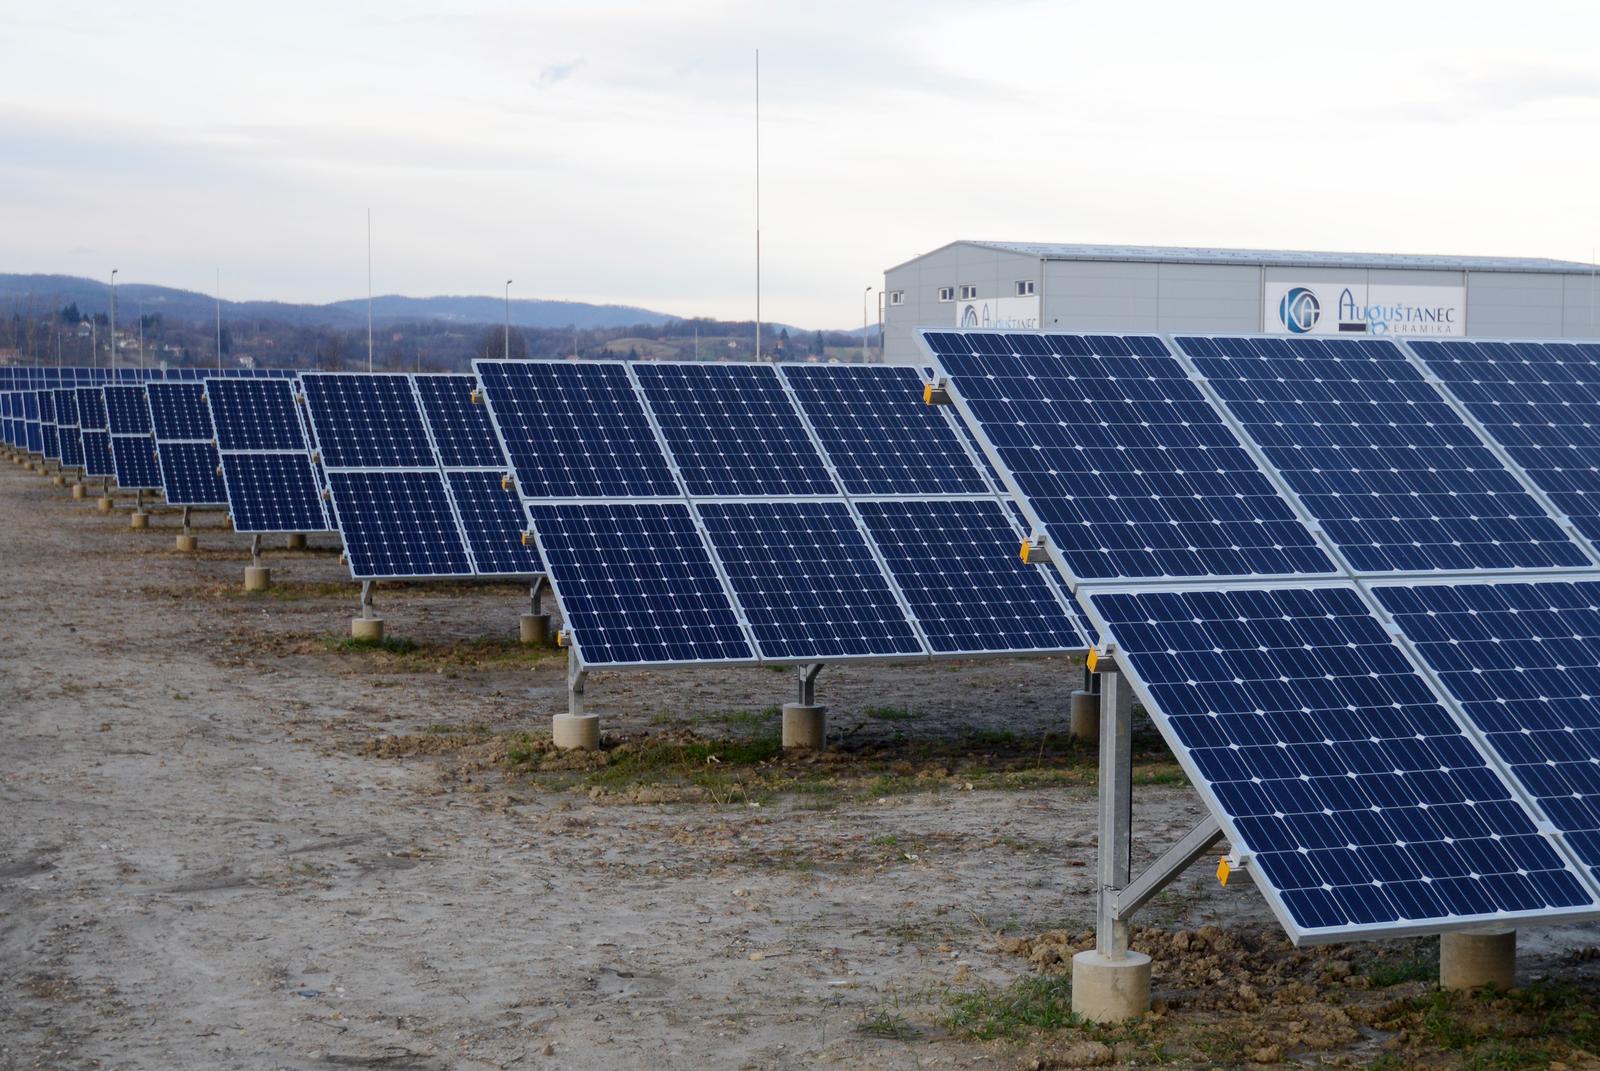 15.12.2014., Lepoglava - Suncana elektrana ukupne snage 993 kw. Investitor je tvrtka Solida a ukuna investicija iznosi 1.5 miljuna eura."nPhoto: Marko Jurinec/PIXSELL